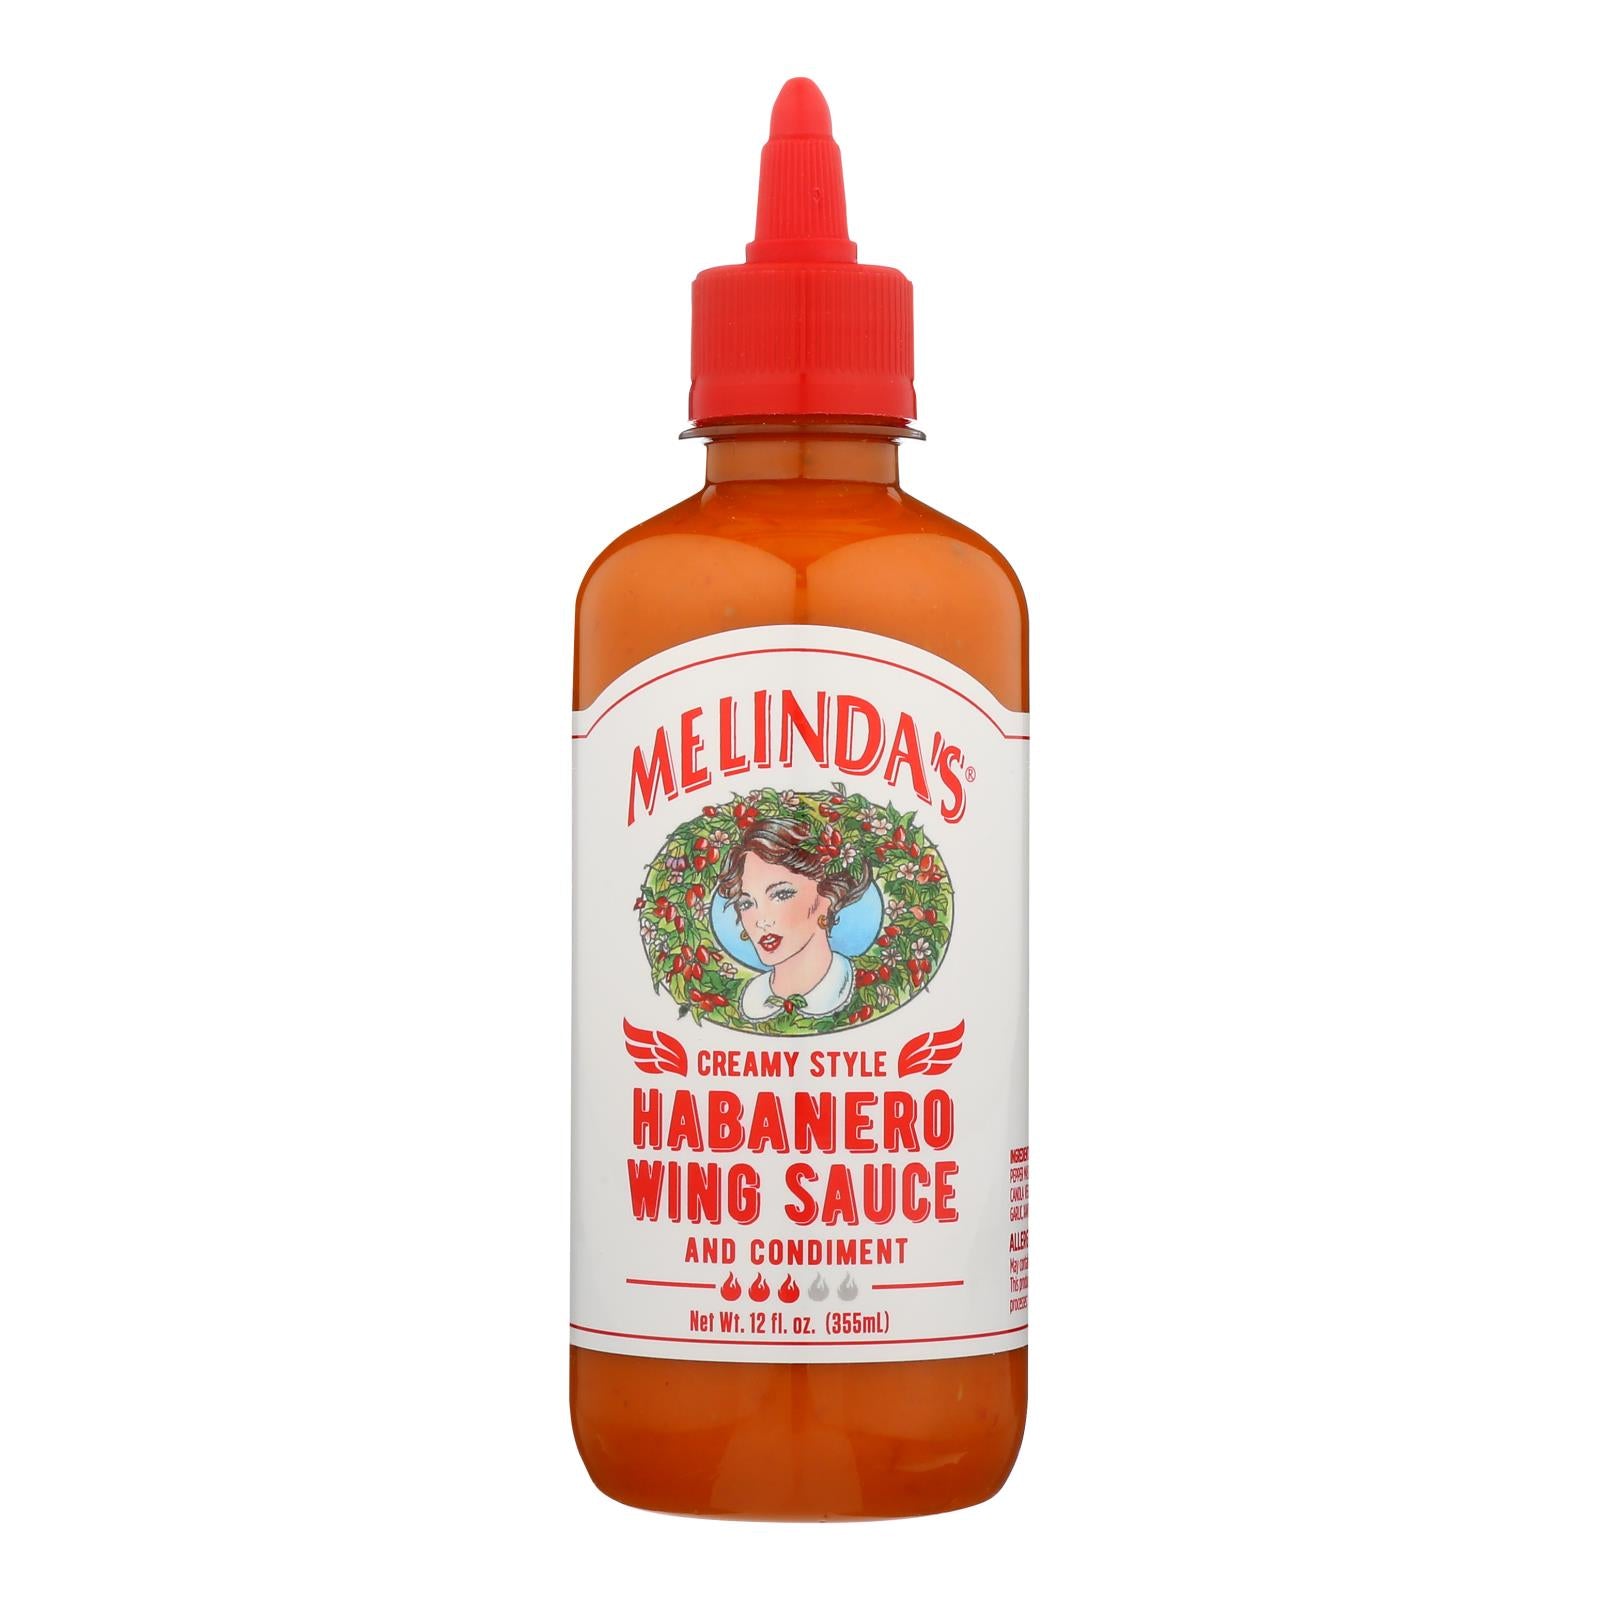 Melinda's, Melinda's - Sauce Wing crémeuse Habanero - Caisse de 6 - 12 OZ (paquet de 6)